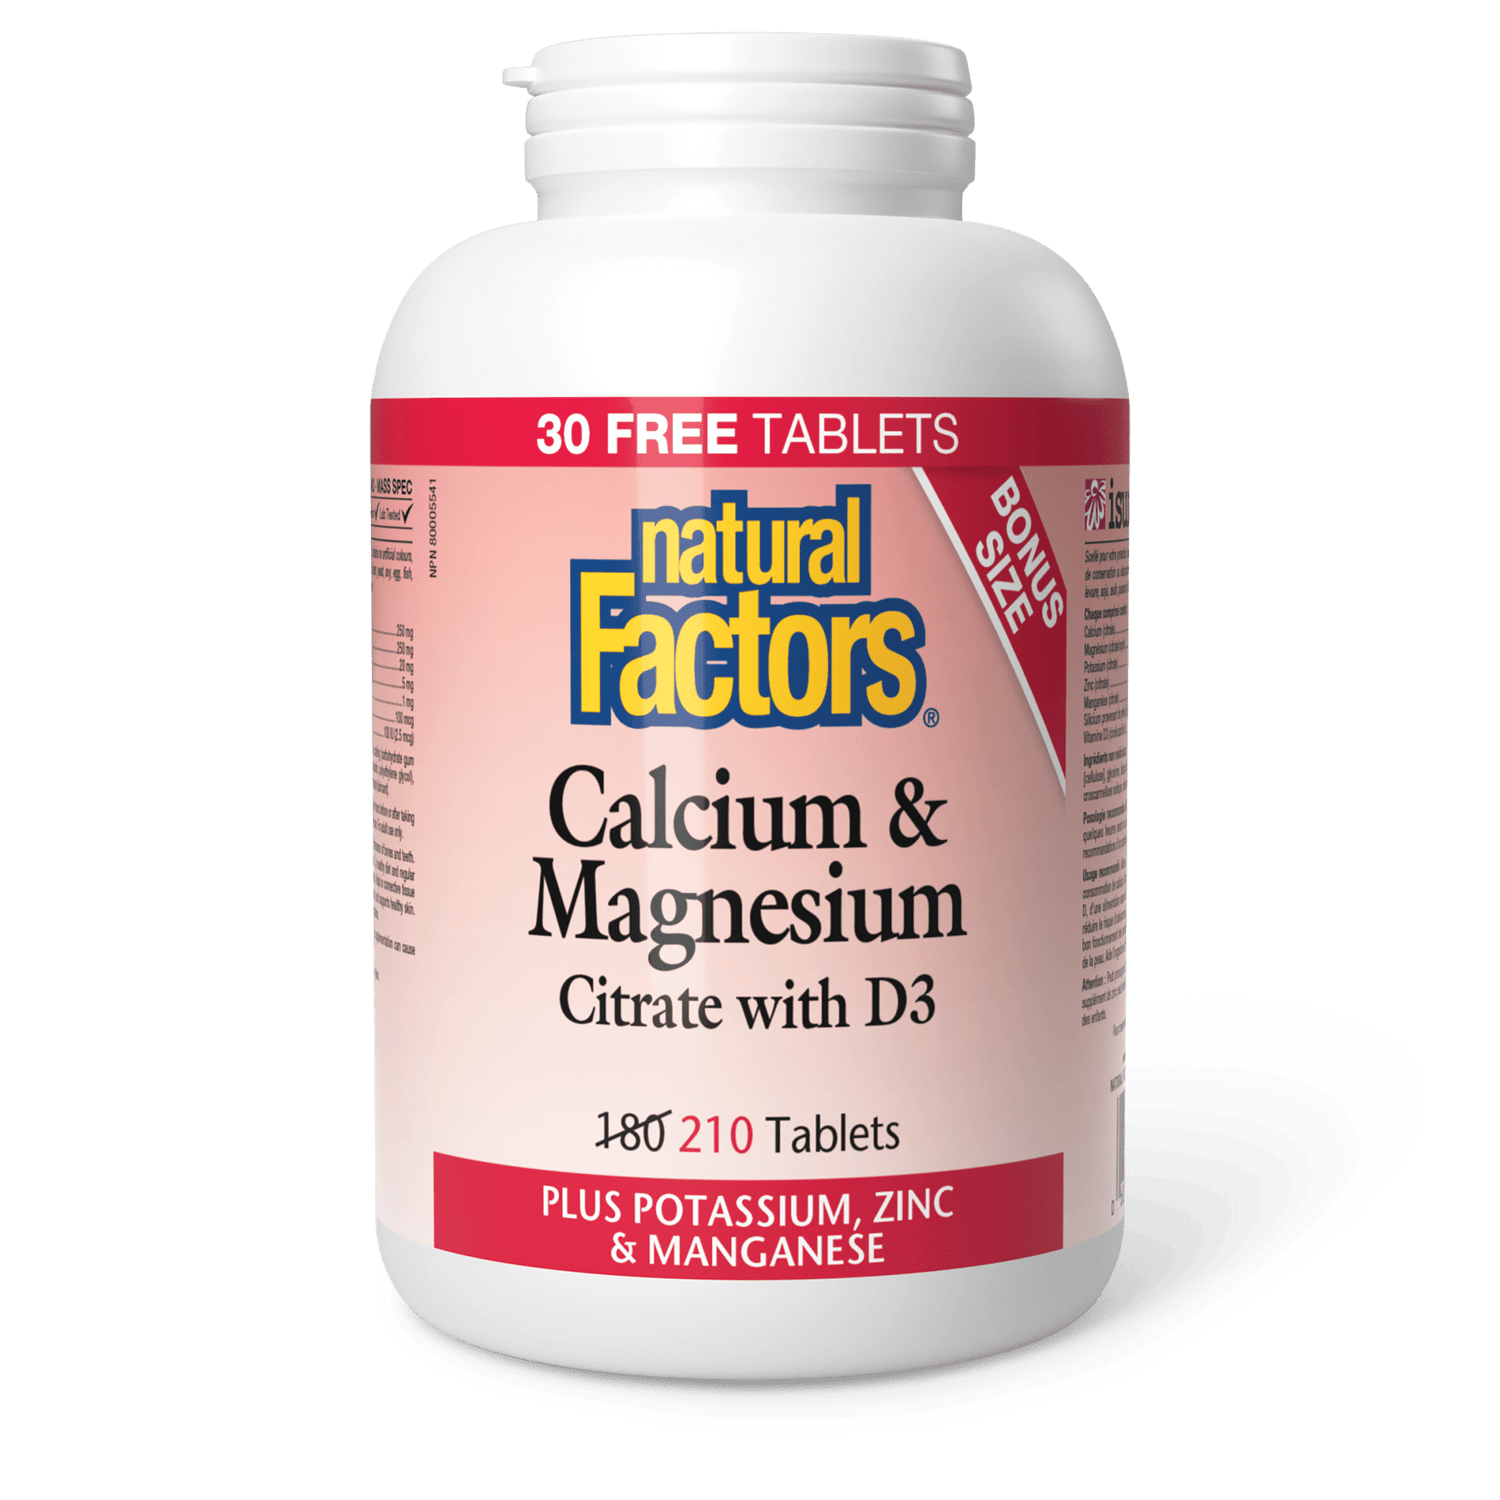 Calcium & Magnesium Citrate with D3 Plus Potassium, Zinc & Manganese, Natural Factors|v|image|8160